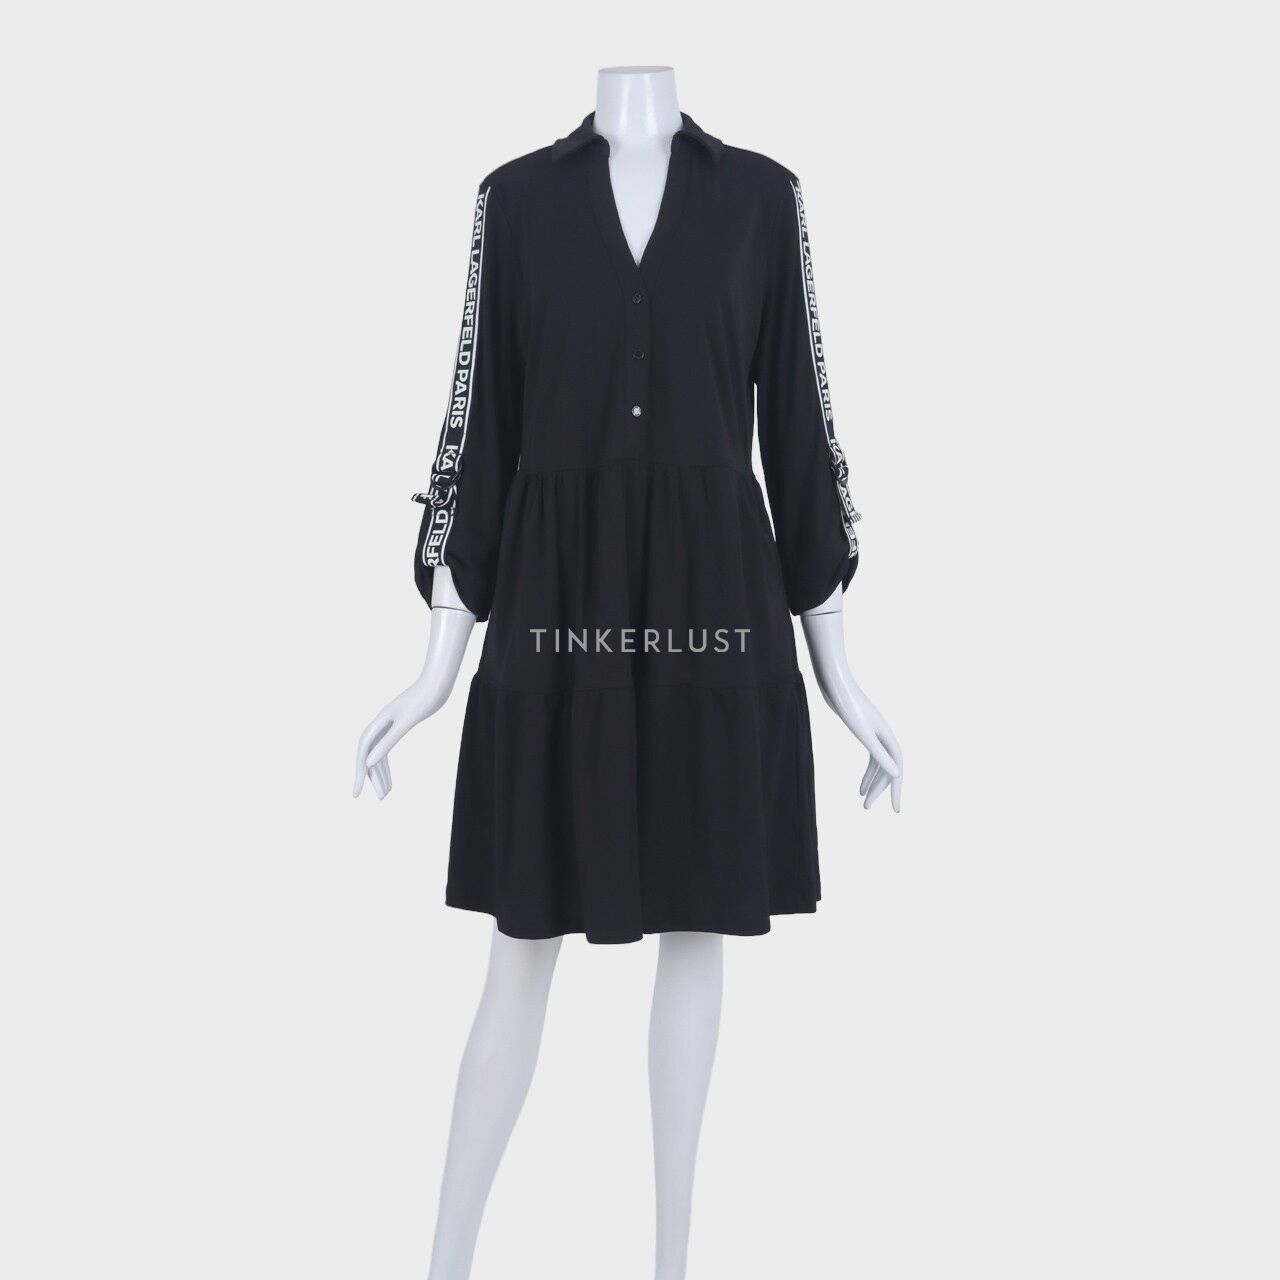 Karl Lagerfeld Black Midi Dress